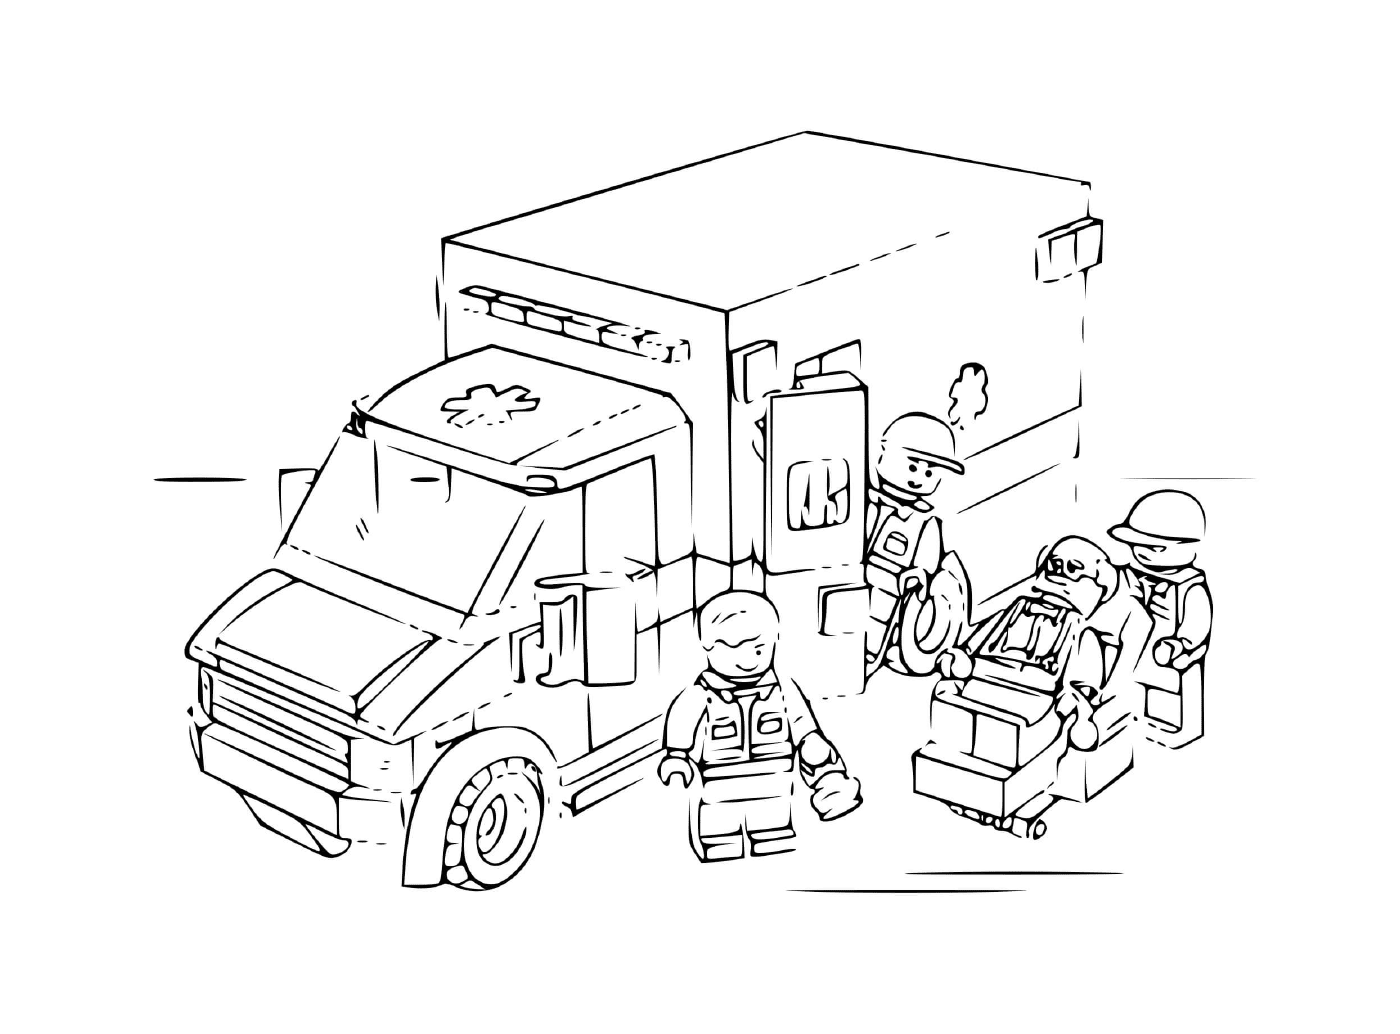  Polícia Lego Ambulância 